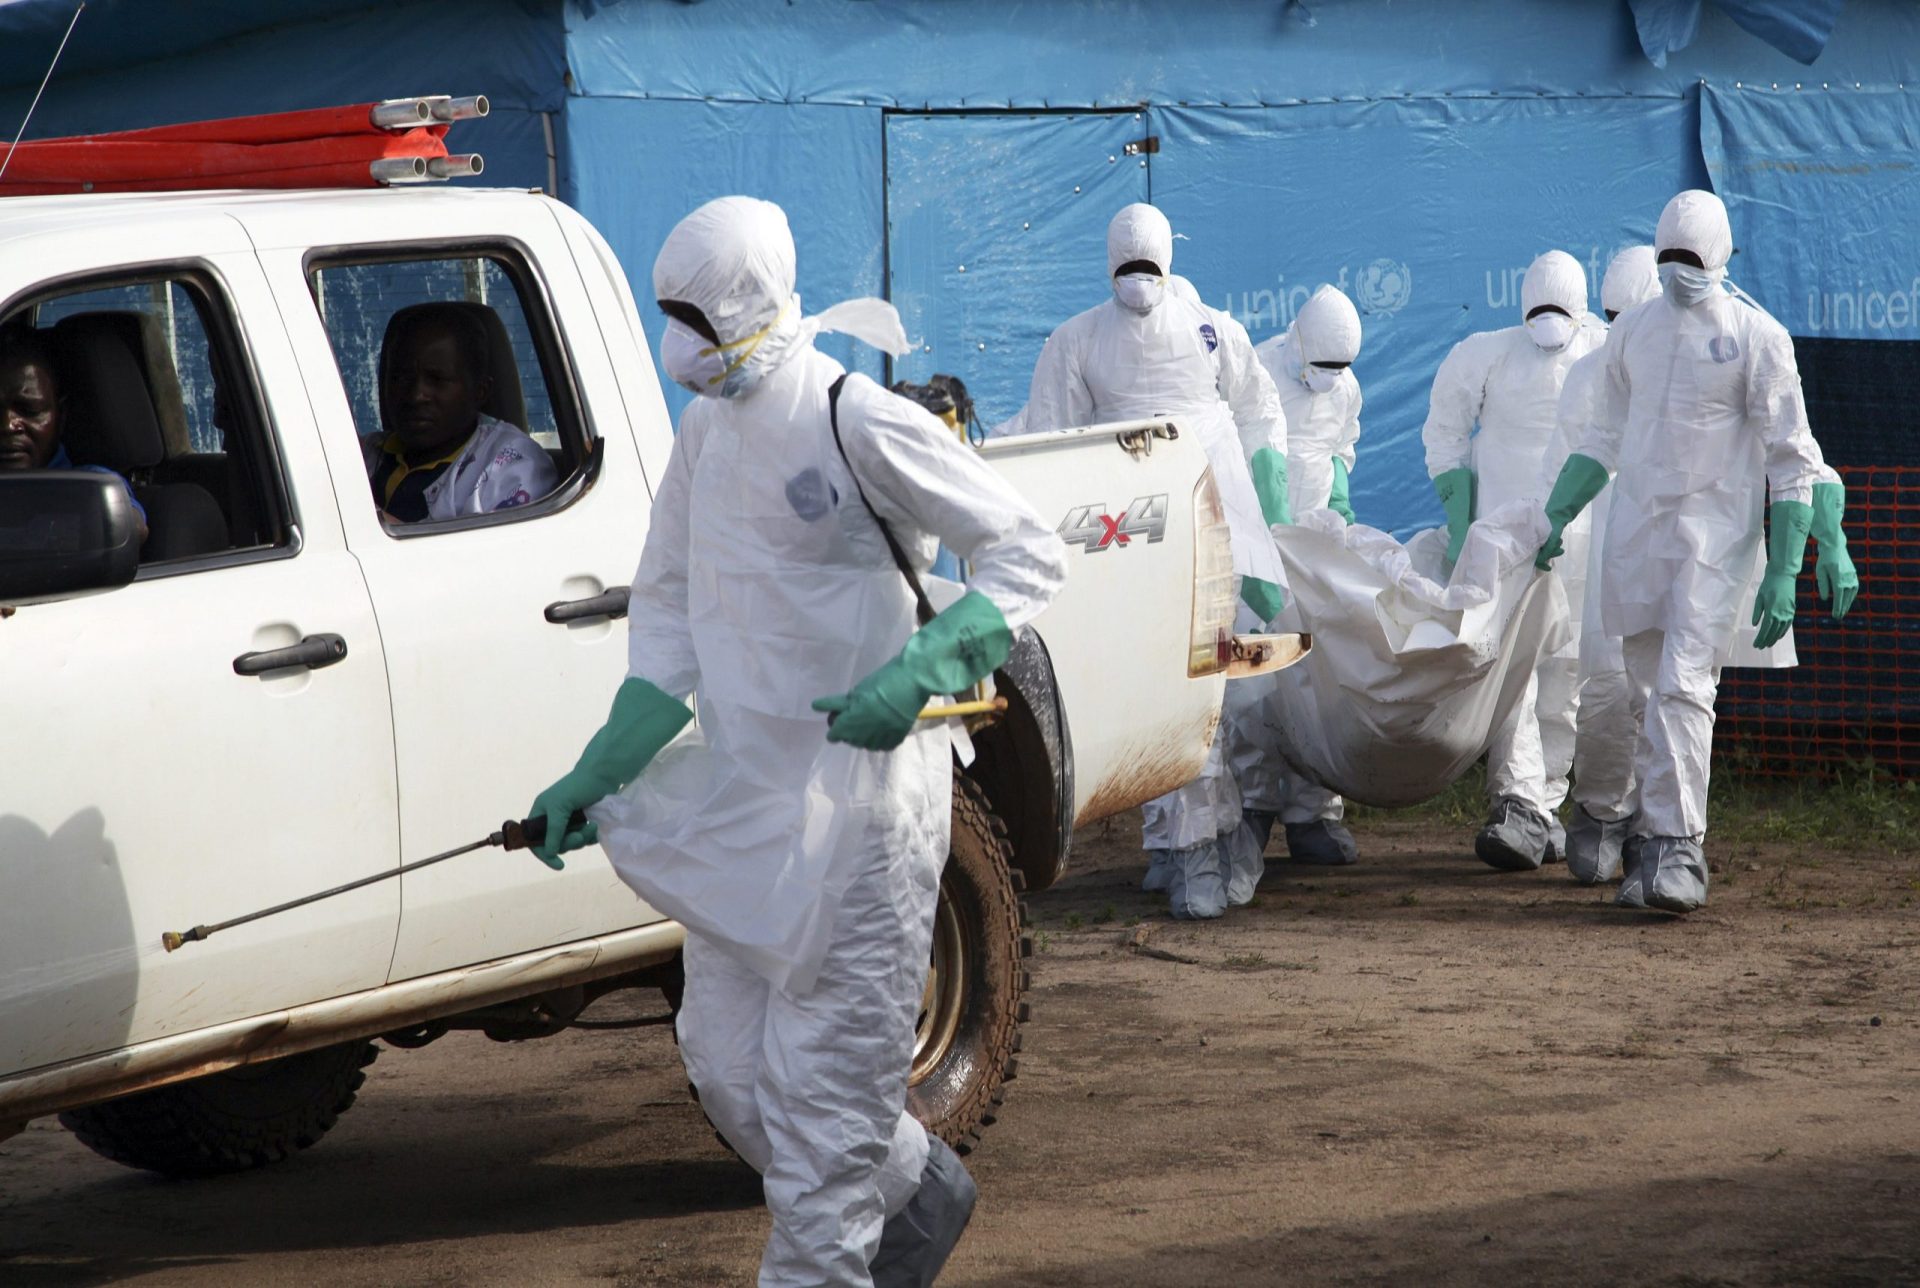 Ébola chega à RD Congo